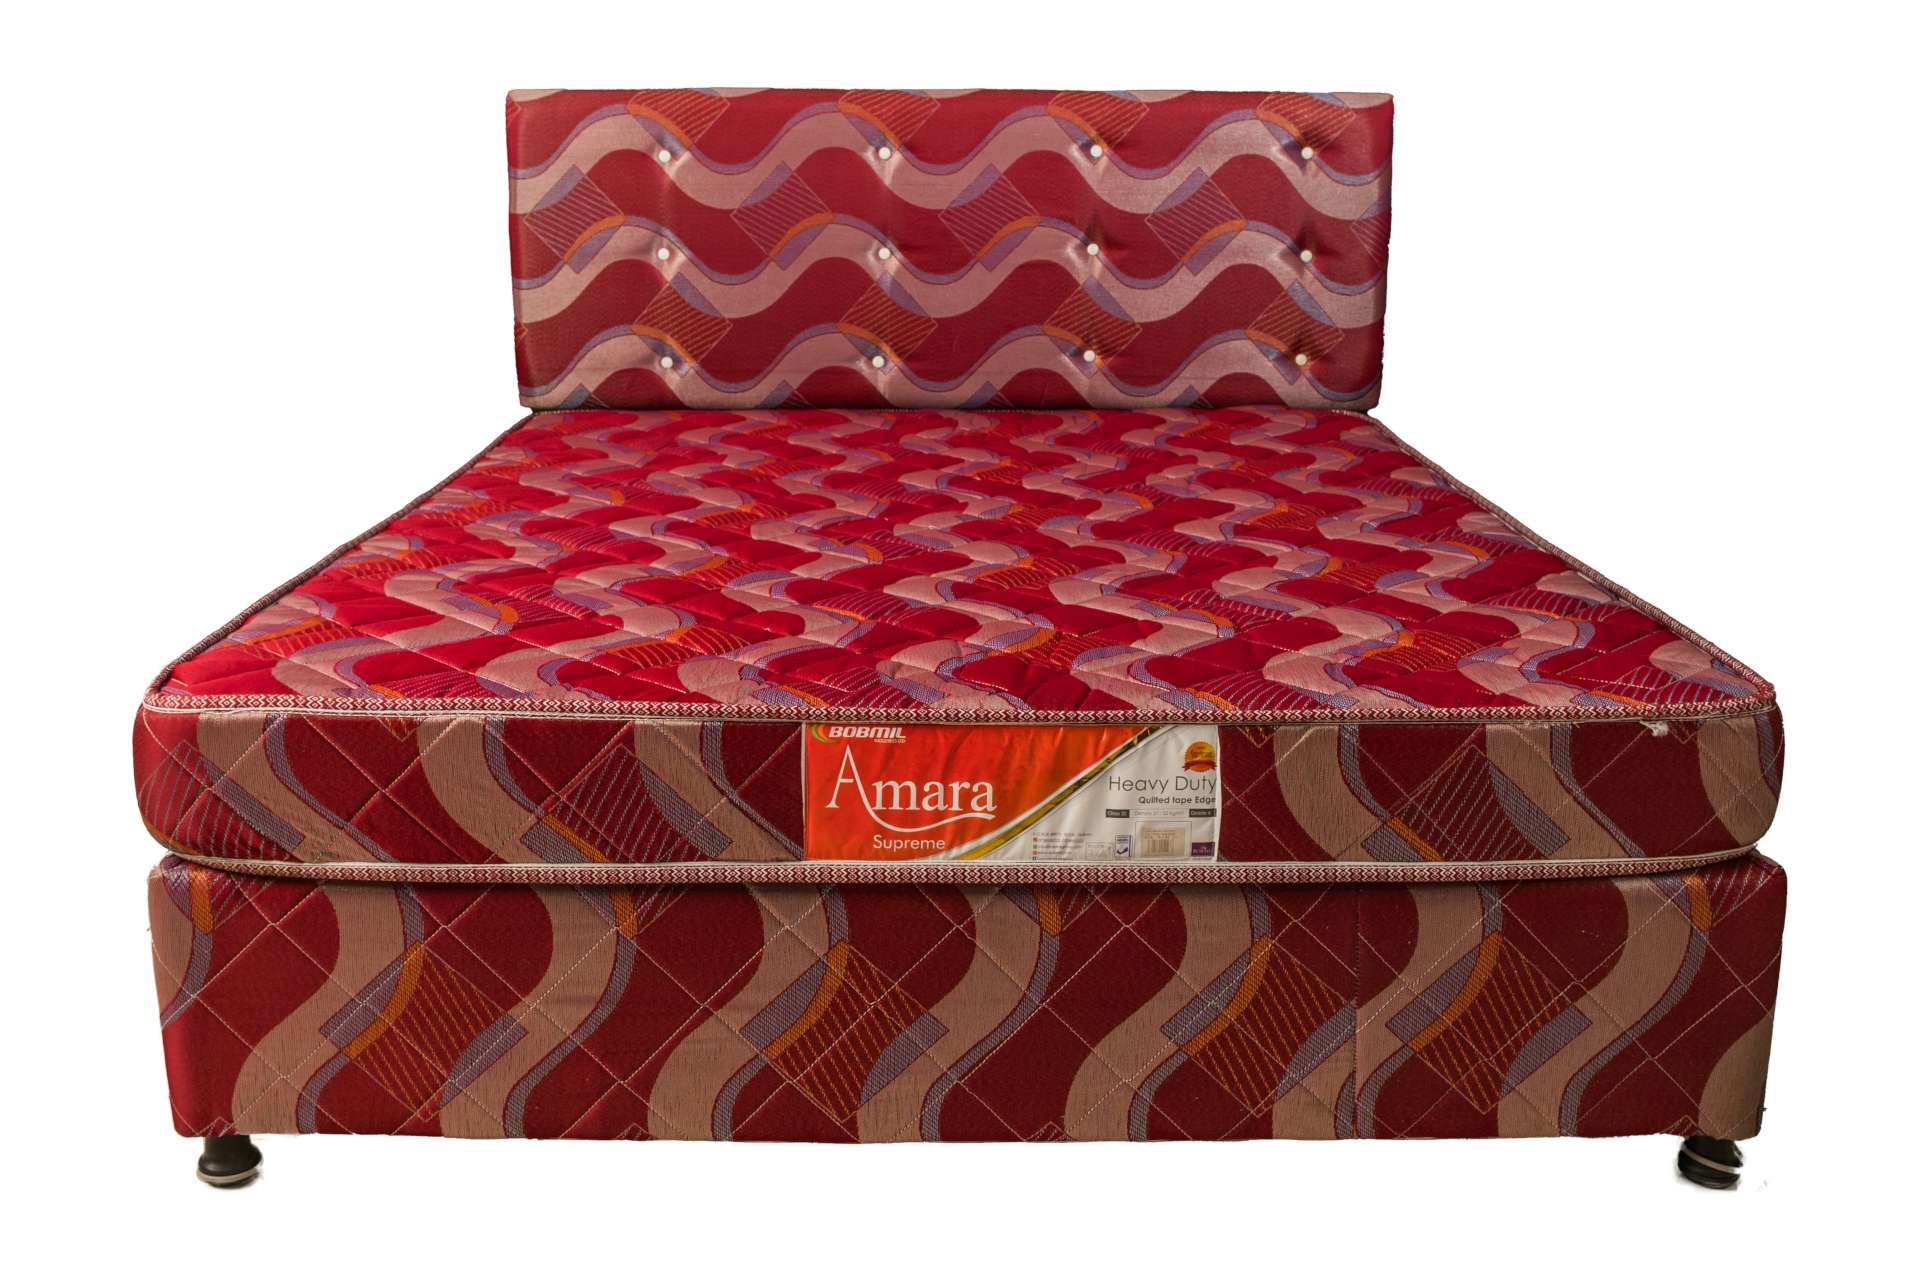 amara mattress price in kenya